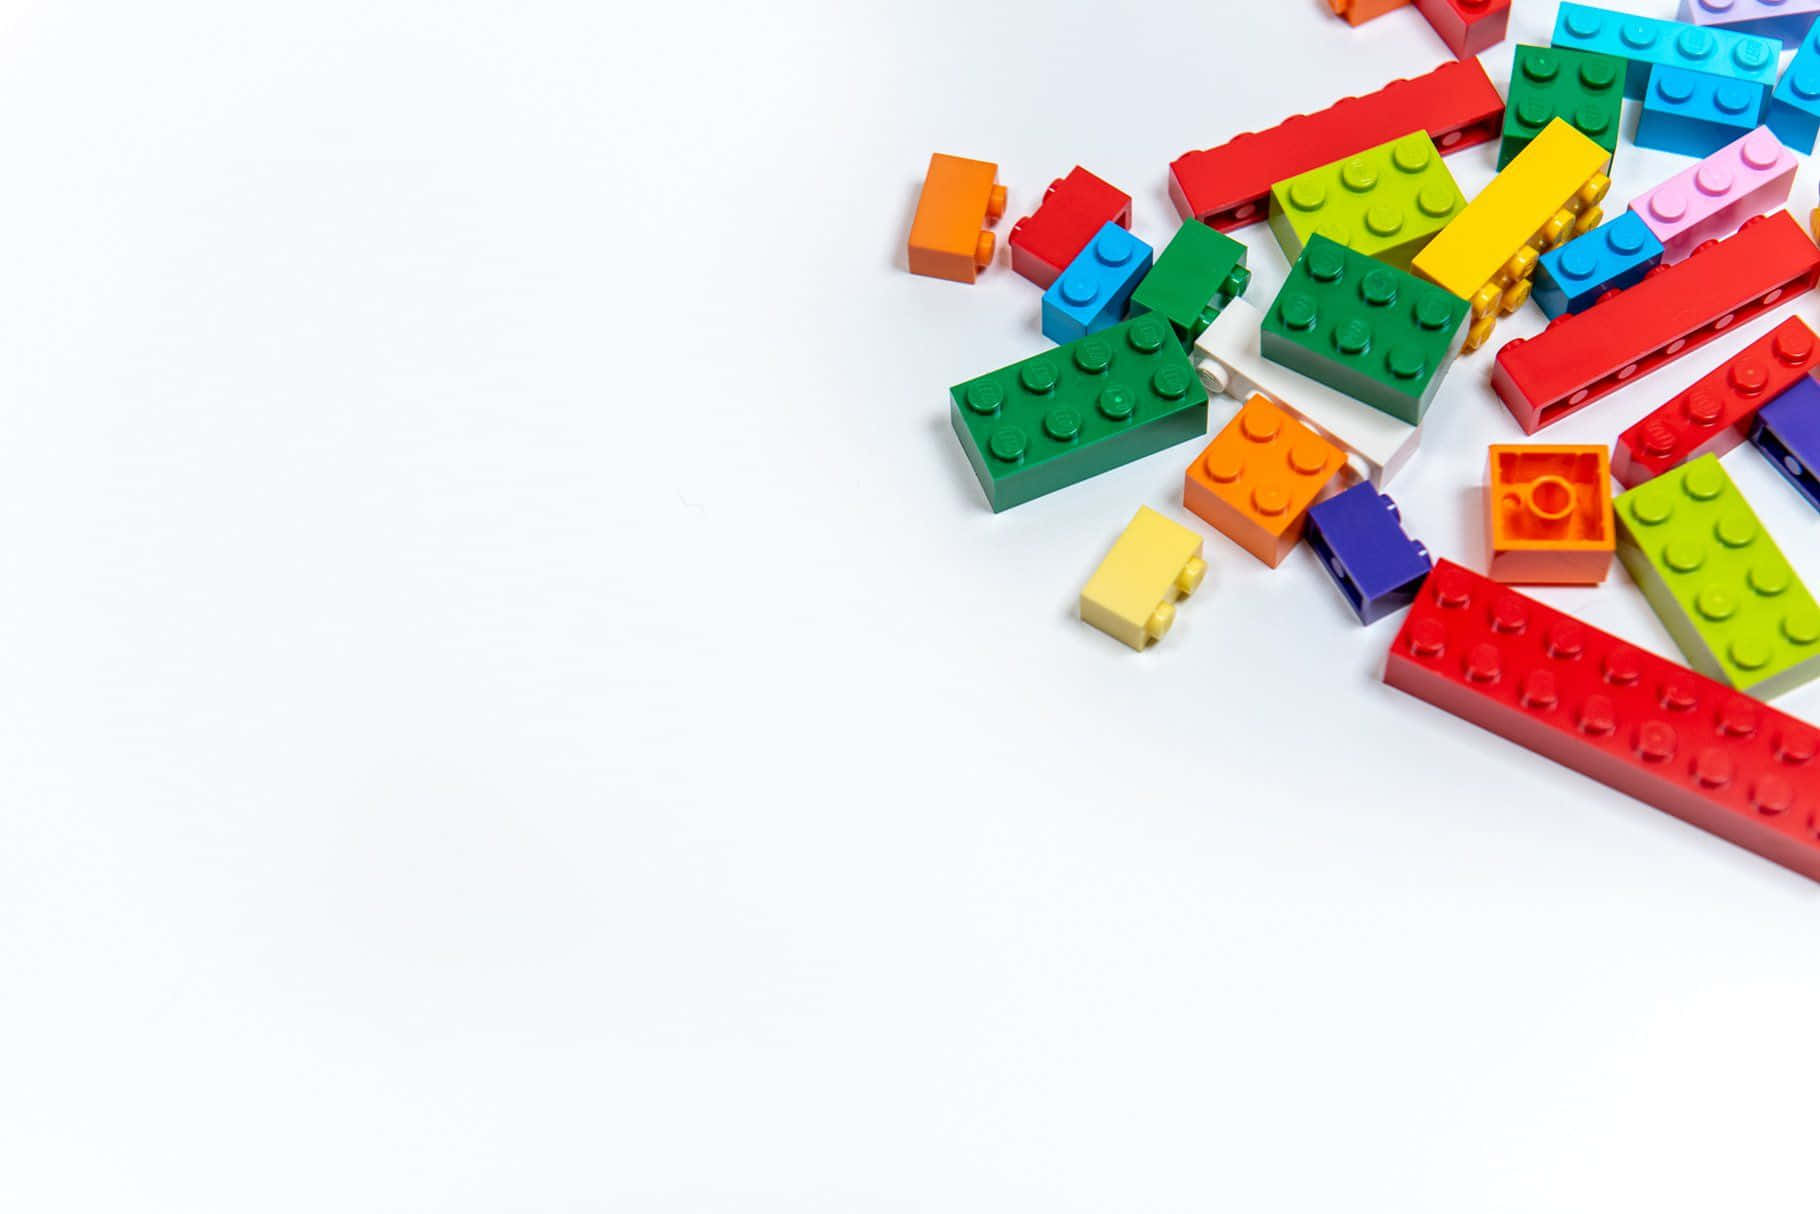 Losbloques De Lego Crean Infinitas Posibilidades